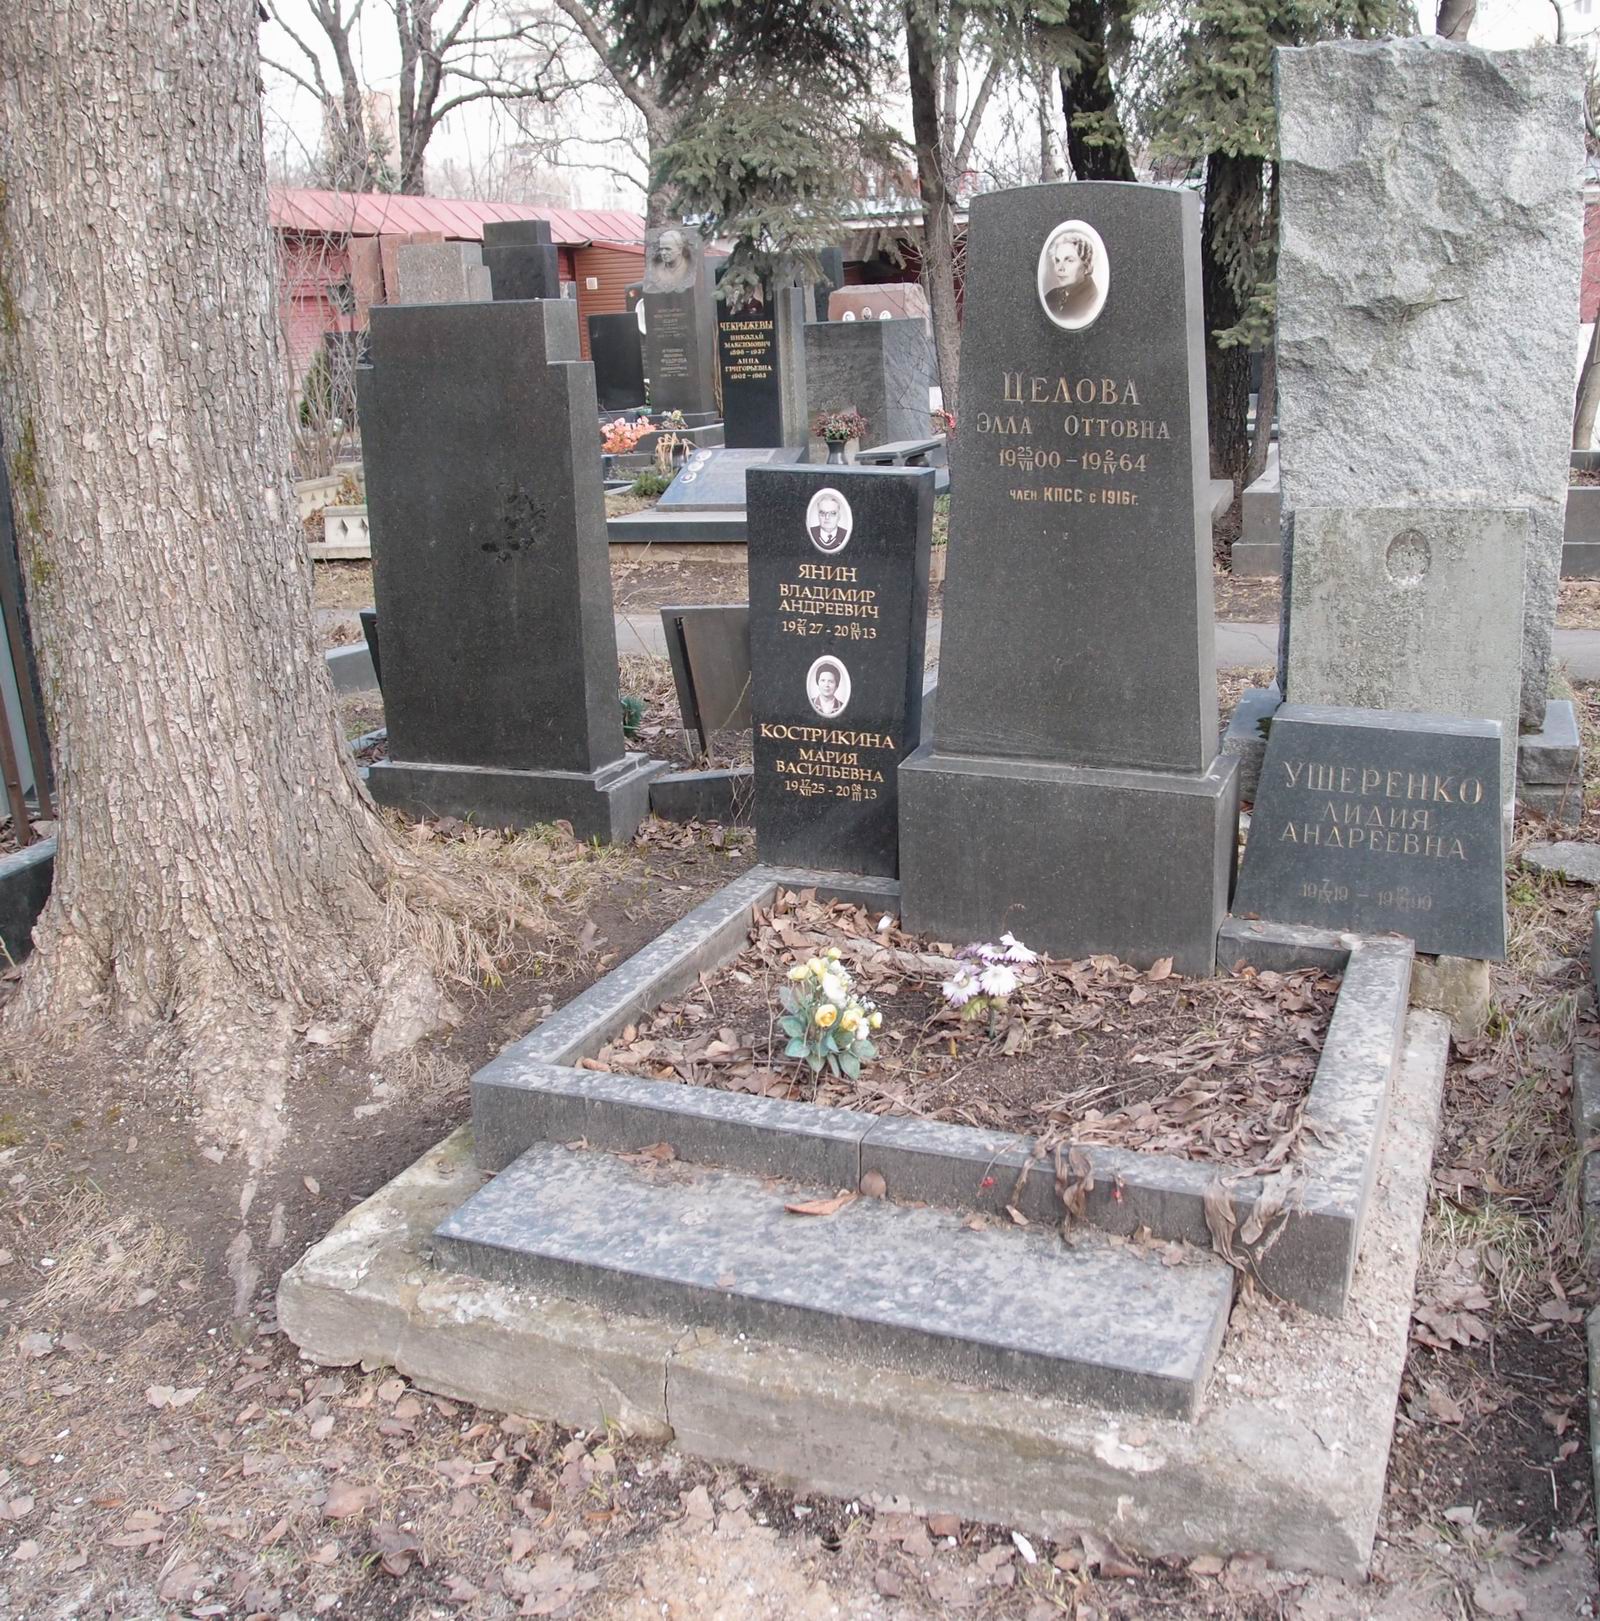 Памятник на могиле Целовой Э.О. (1900-1964), на Новодевичьем кладбище (5-8-5).